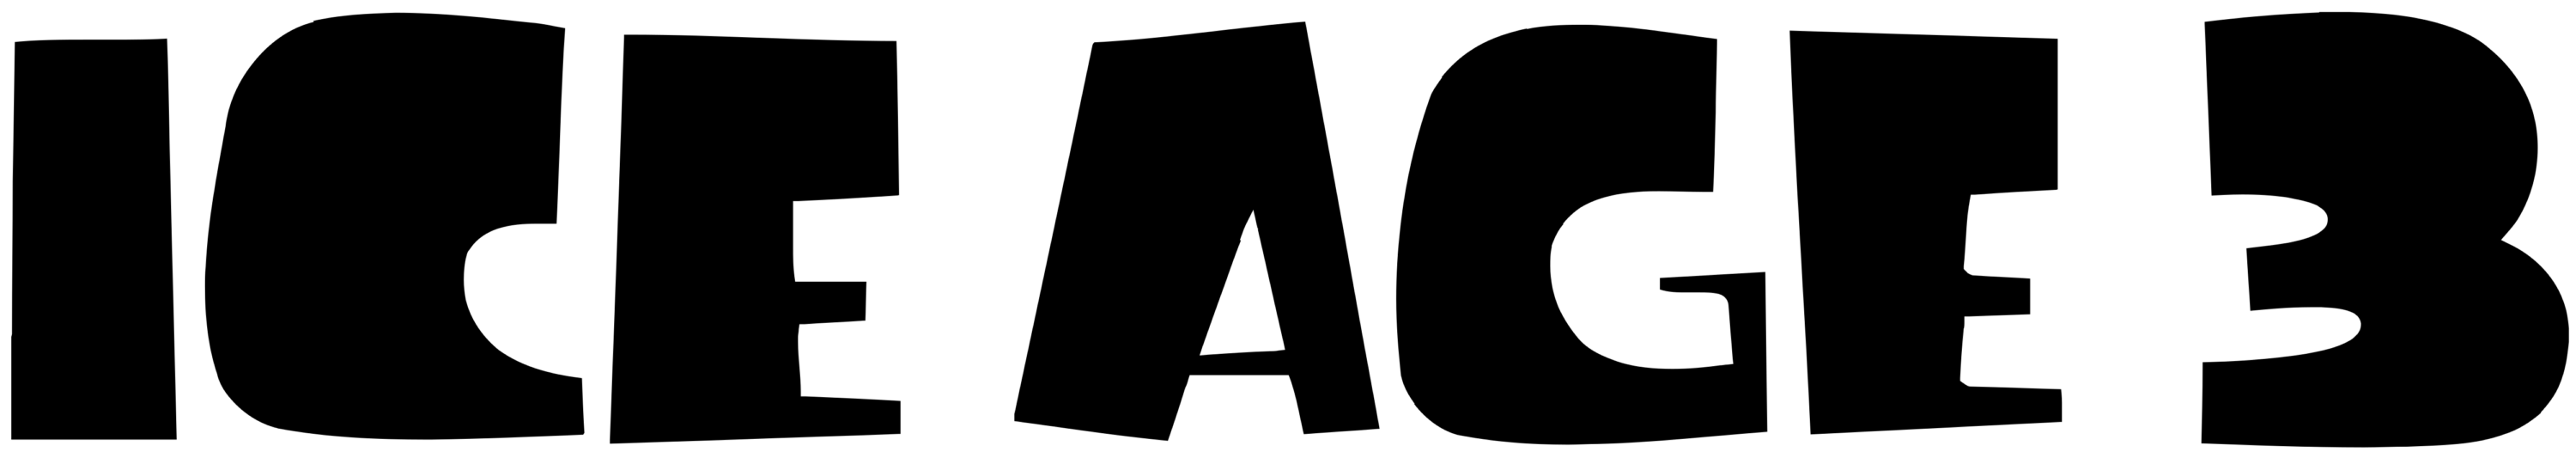 Ice Age 3 Logo